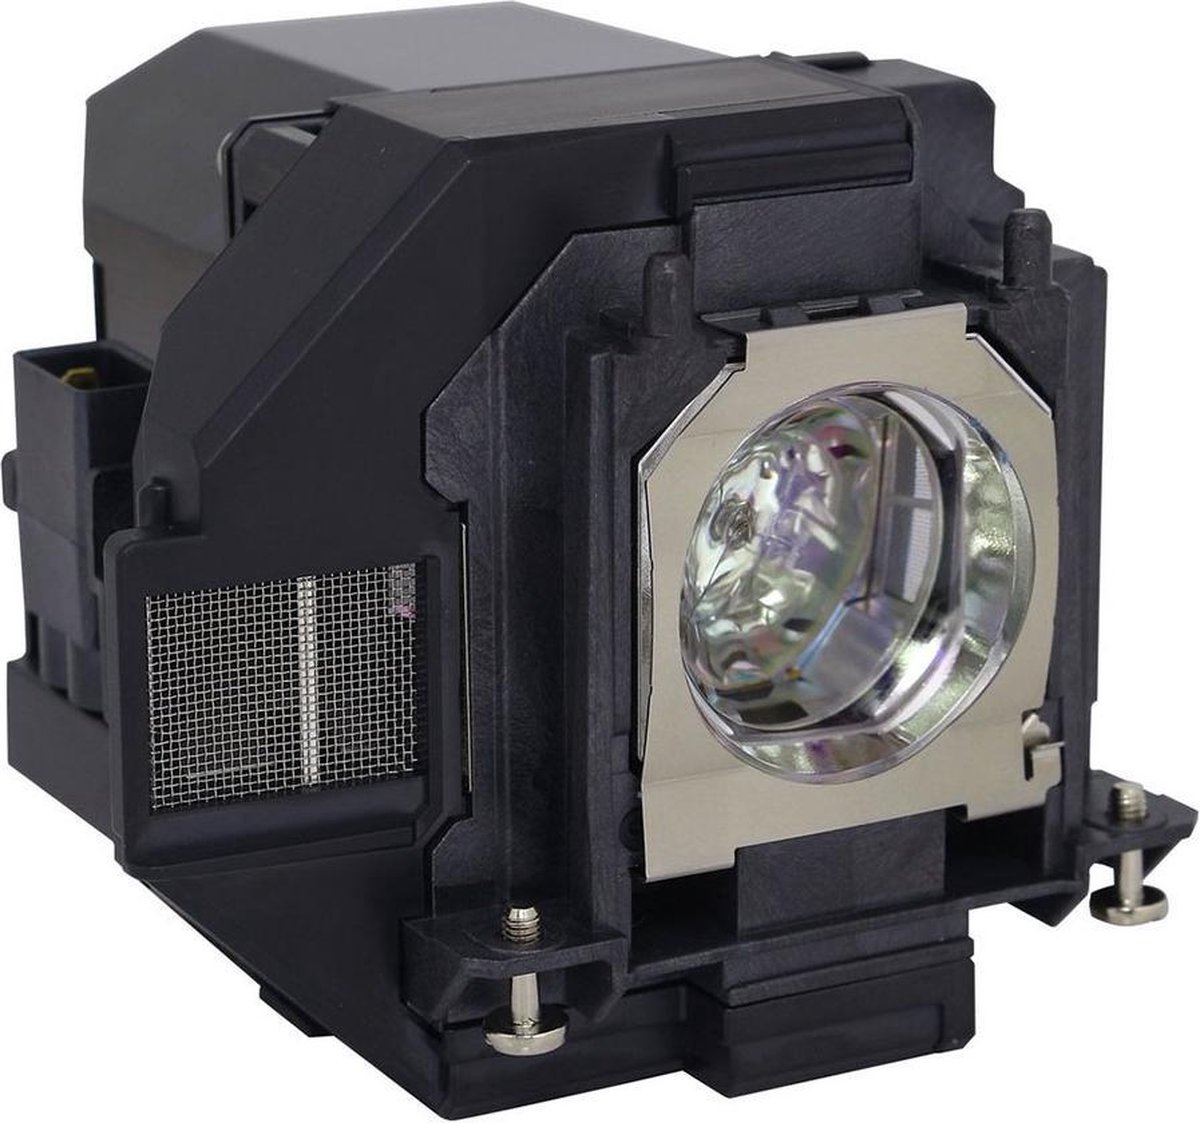 Beamerlamp geschikt voor de EPSON EB-X400 beamer, lamp code LP96 / V13H010L96. Bevat originele UHP lamp, prestaties gelijk aan origineel.